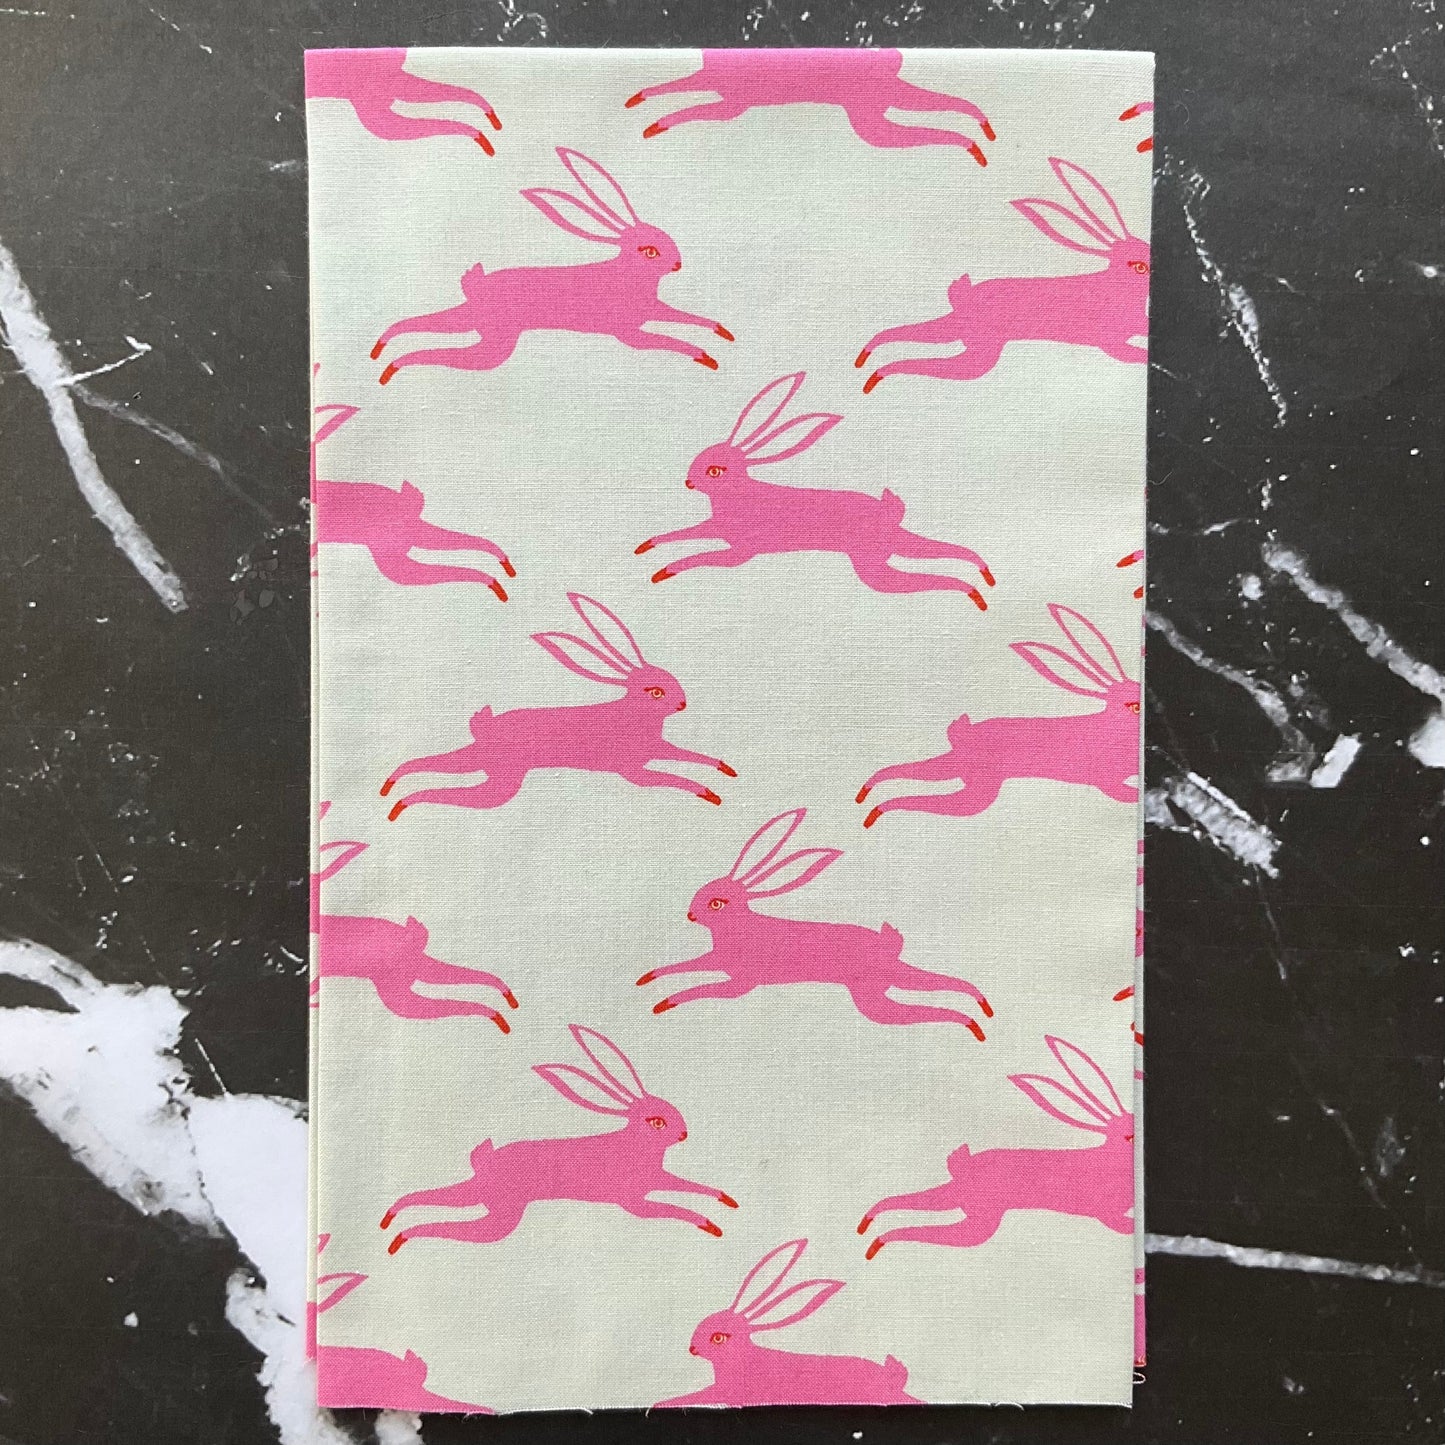 Jardin par Sarah Watts - Bunny Run Flamingo RS2087 11